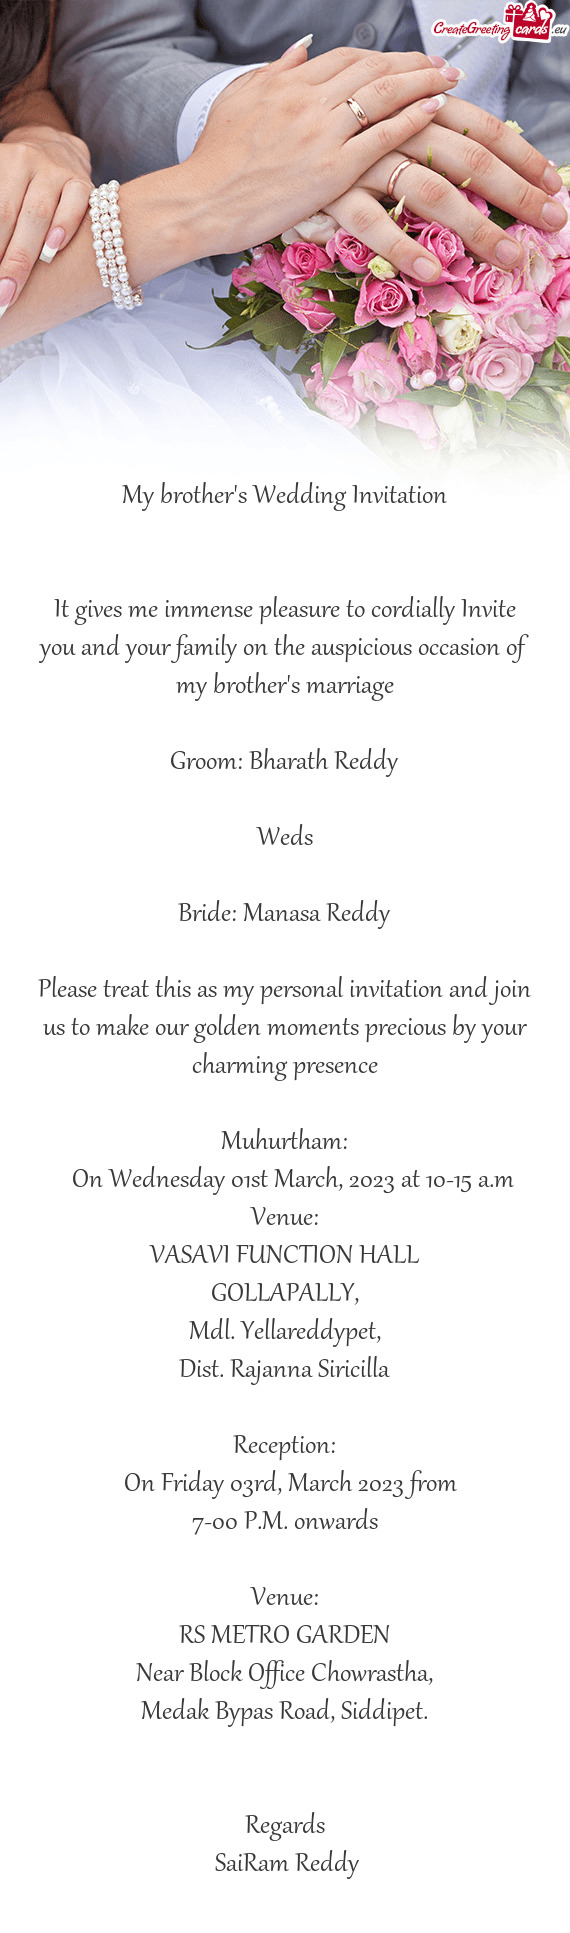 Bride: Manasa Reddy